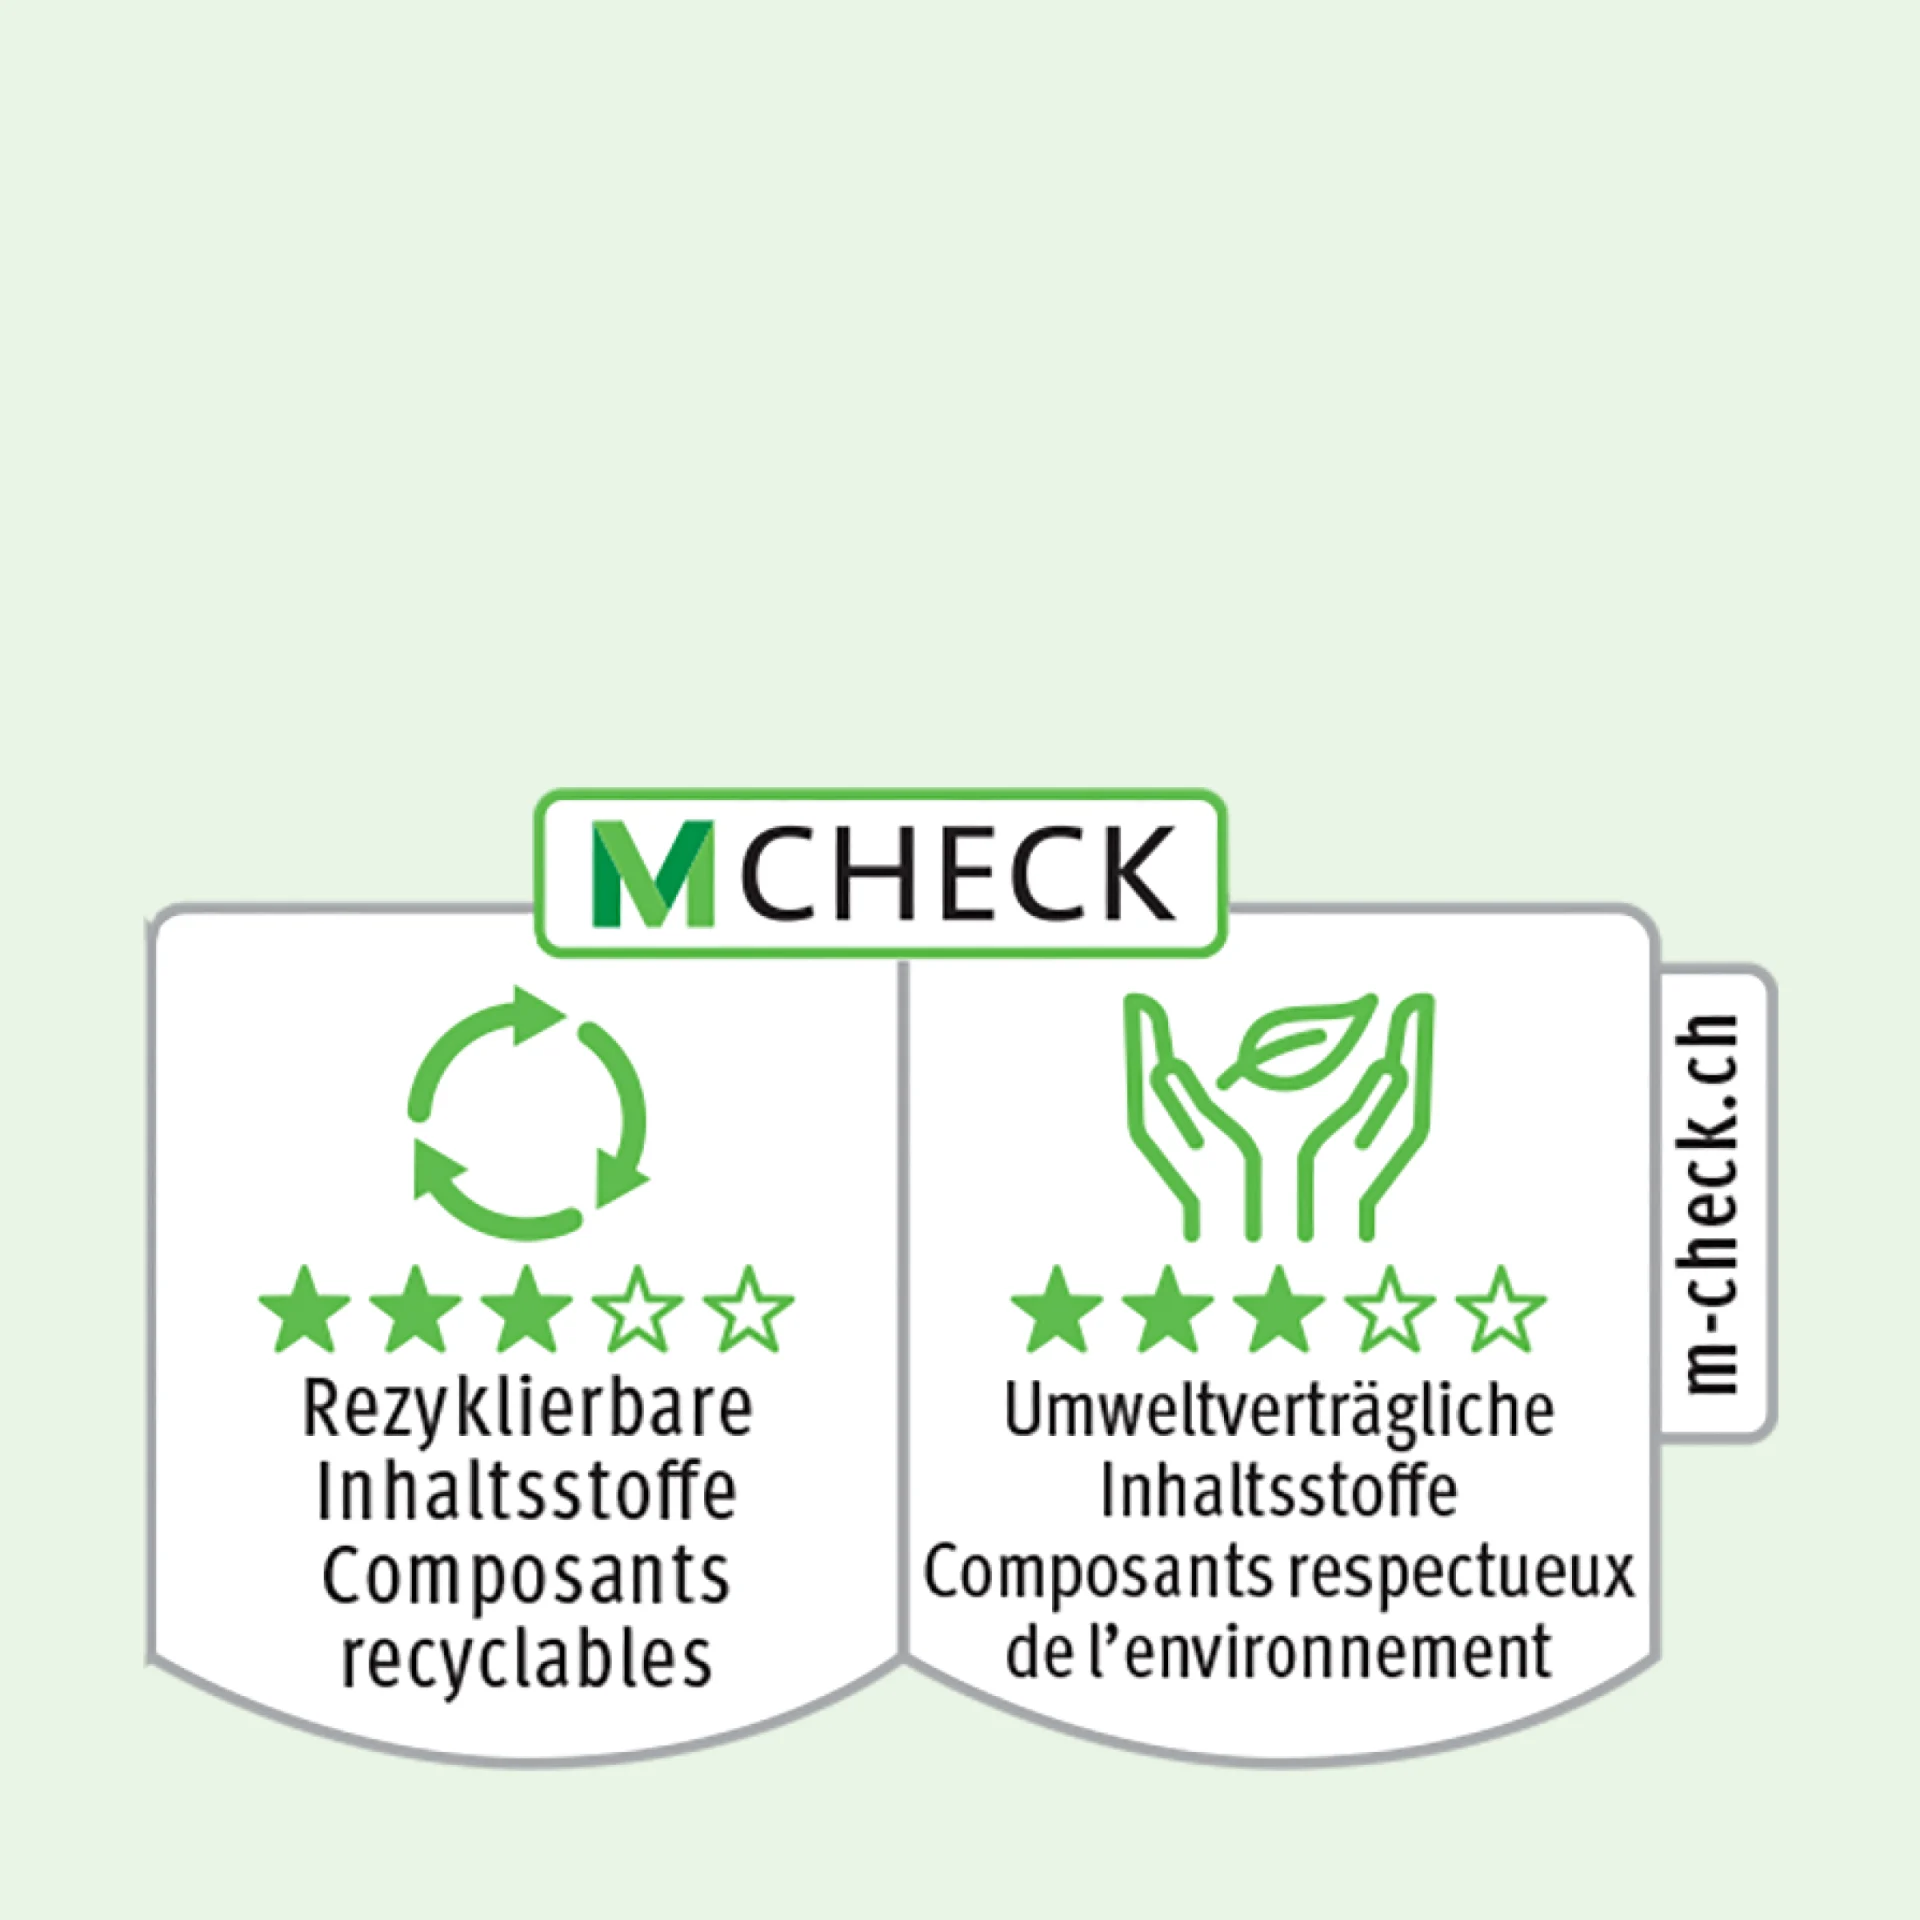 Icône M-Check représentant un cercle et deux mains tenant une feuille, ainsi que trois étoiles en composants recyclables et emballages respectueux de l’environnement.